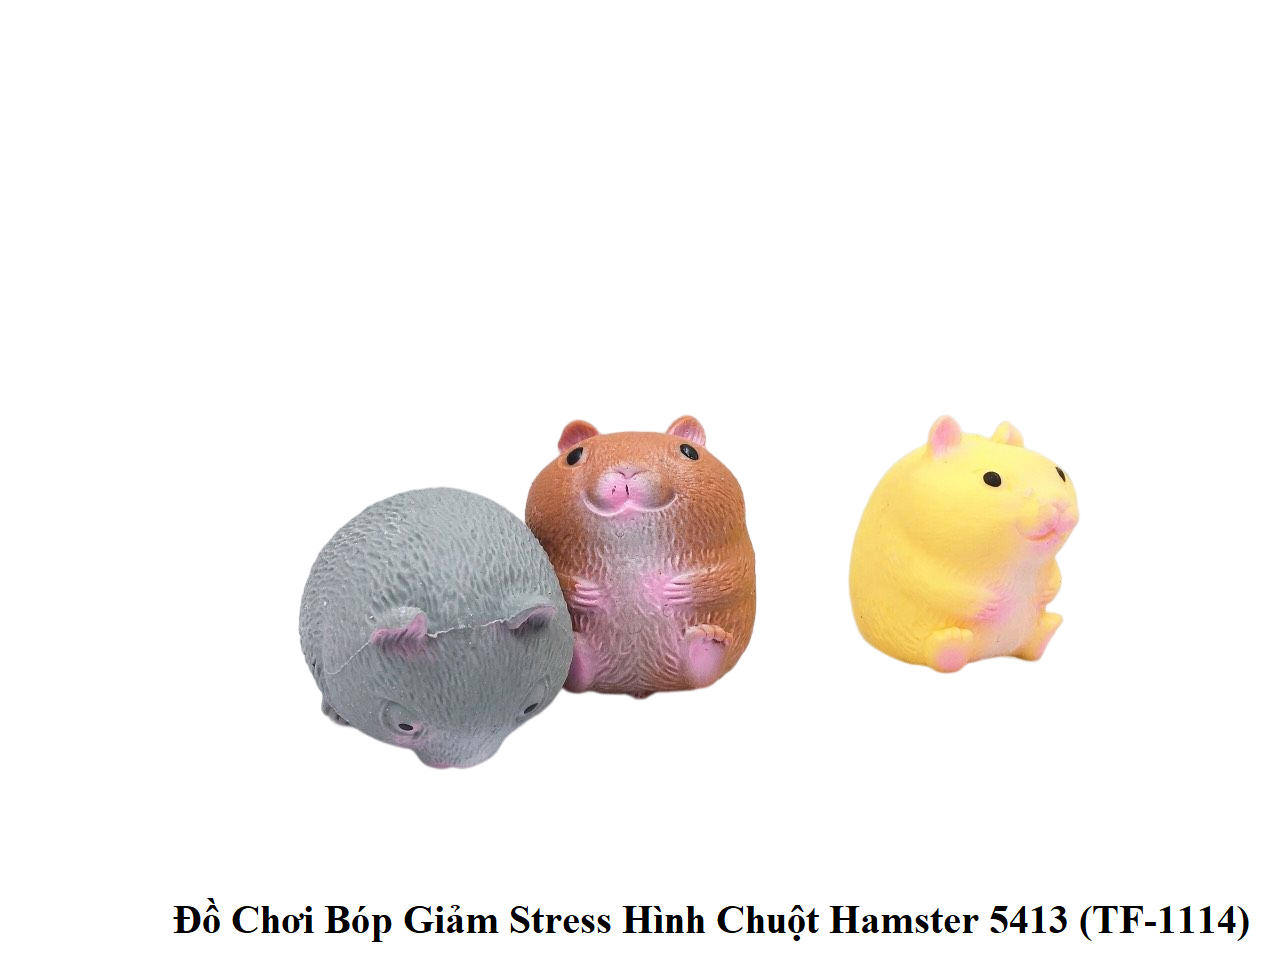 Đồ Chơi Bóp Giảm Stress Hình Chuột Hamster 5413 (TF-1114) - HAPPY TIME